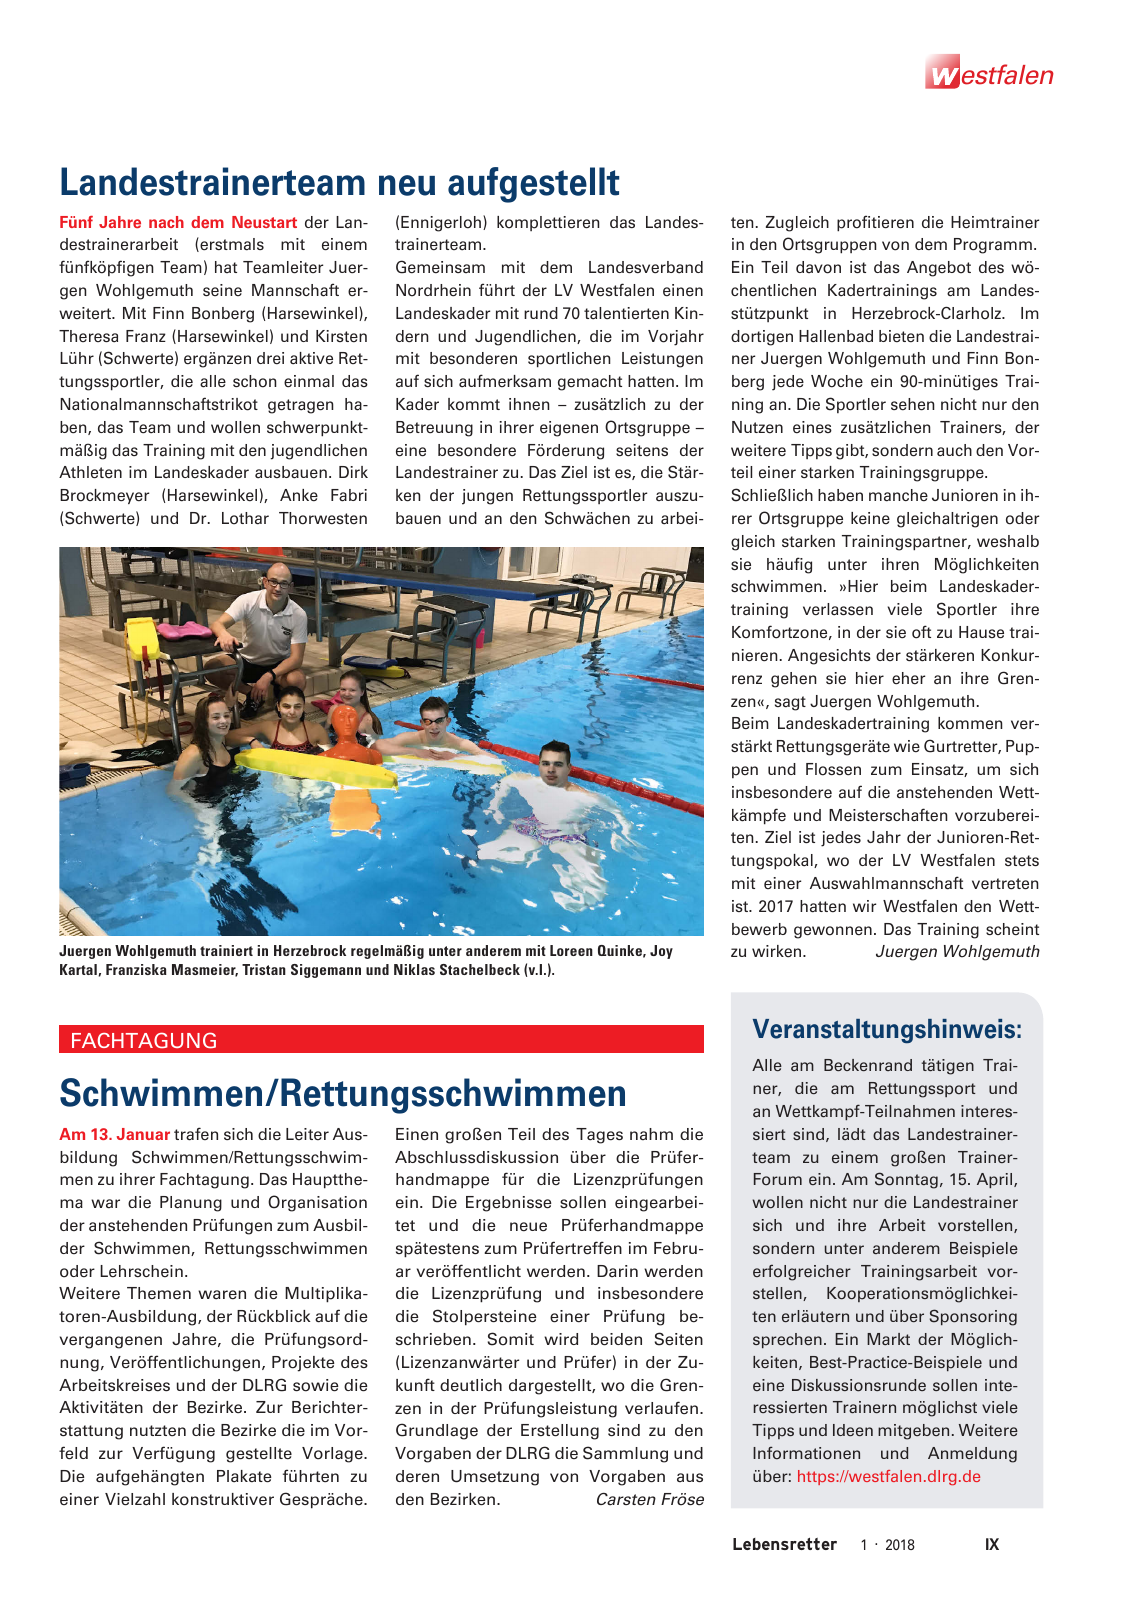 Vorschau Lebensretter 1/2018 - Regionalausgabe Westfalen Seite 11